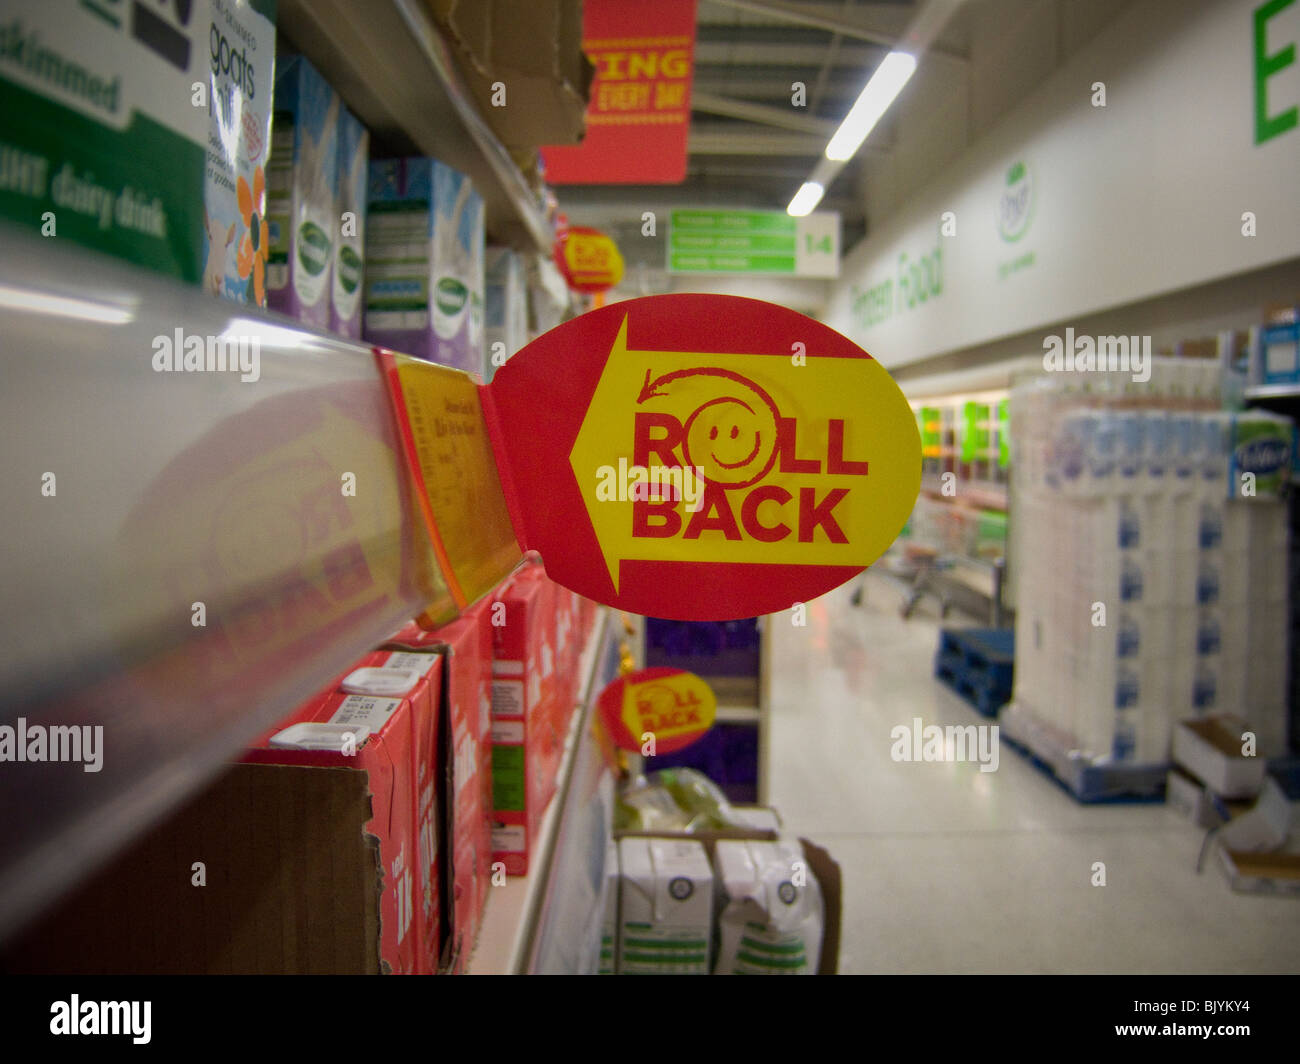 Melden Sie ein "Roll-Back [die Preise]" in einem ASDA Speicher in Großbritannien. Stockfoto